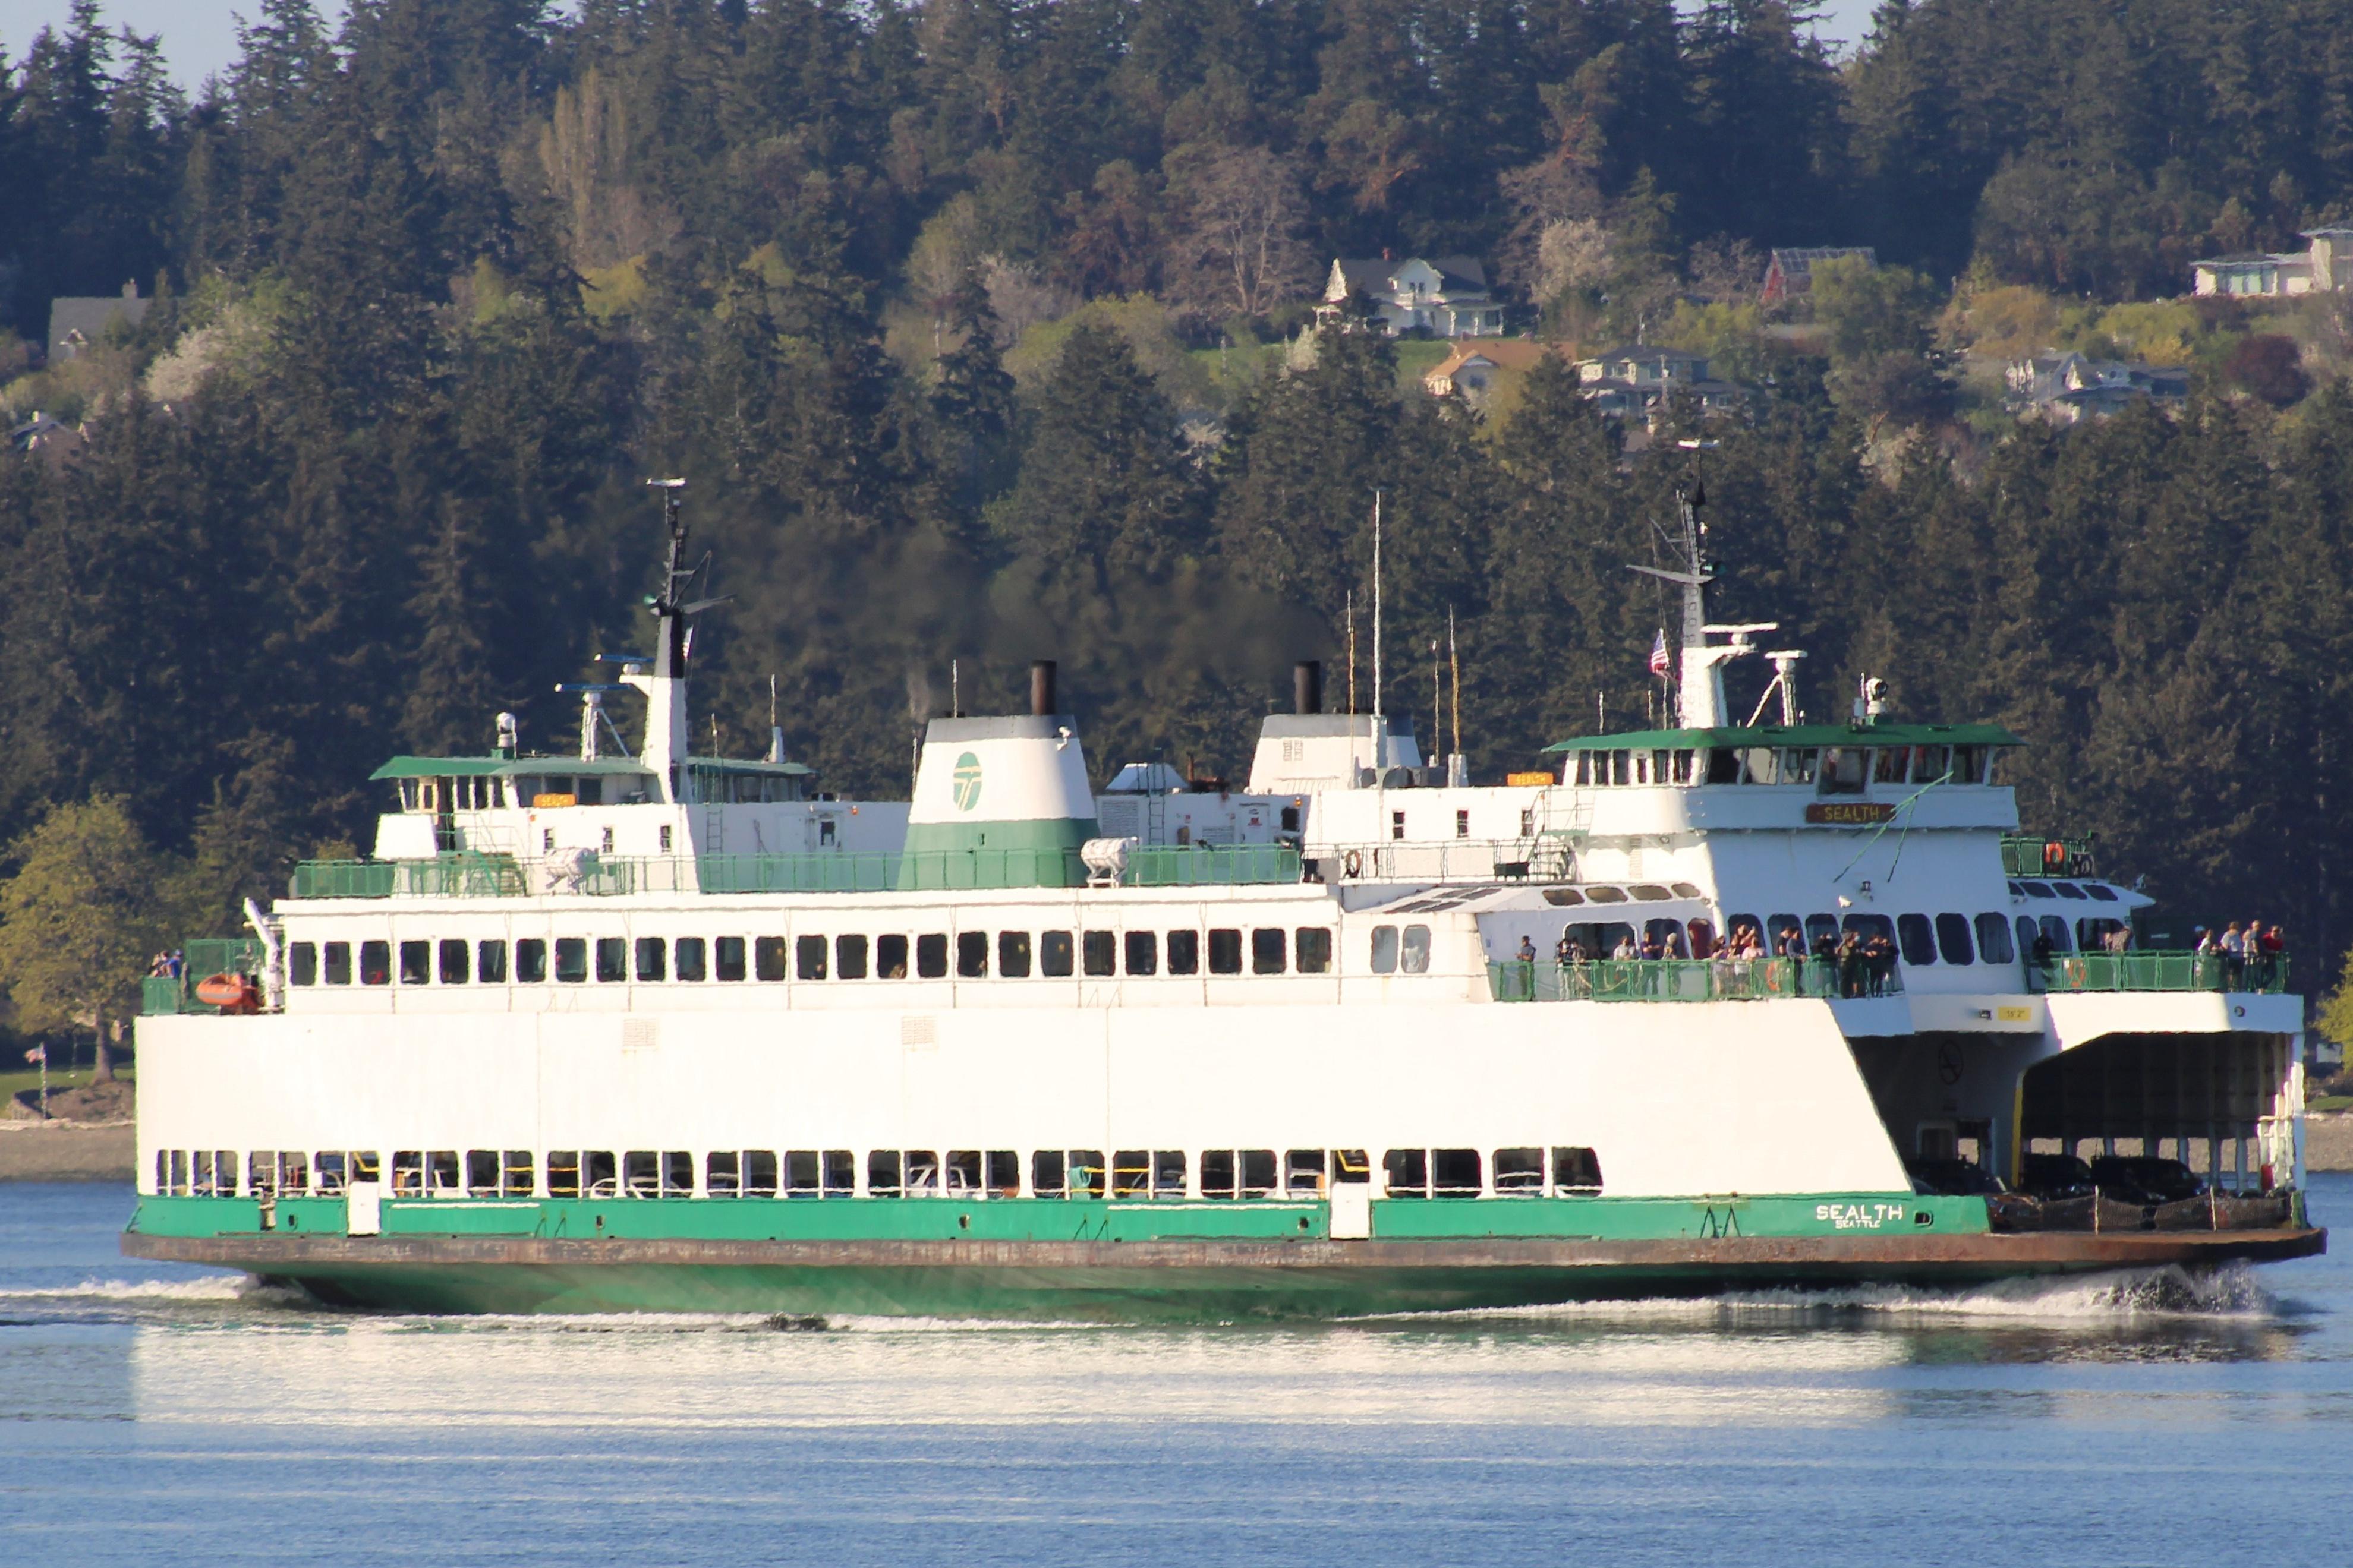 Bainbridge Island – Seattle Ferry